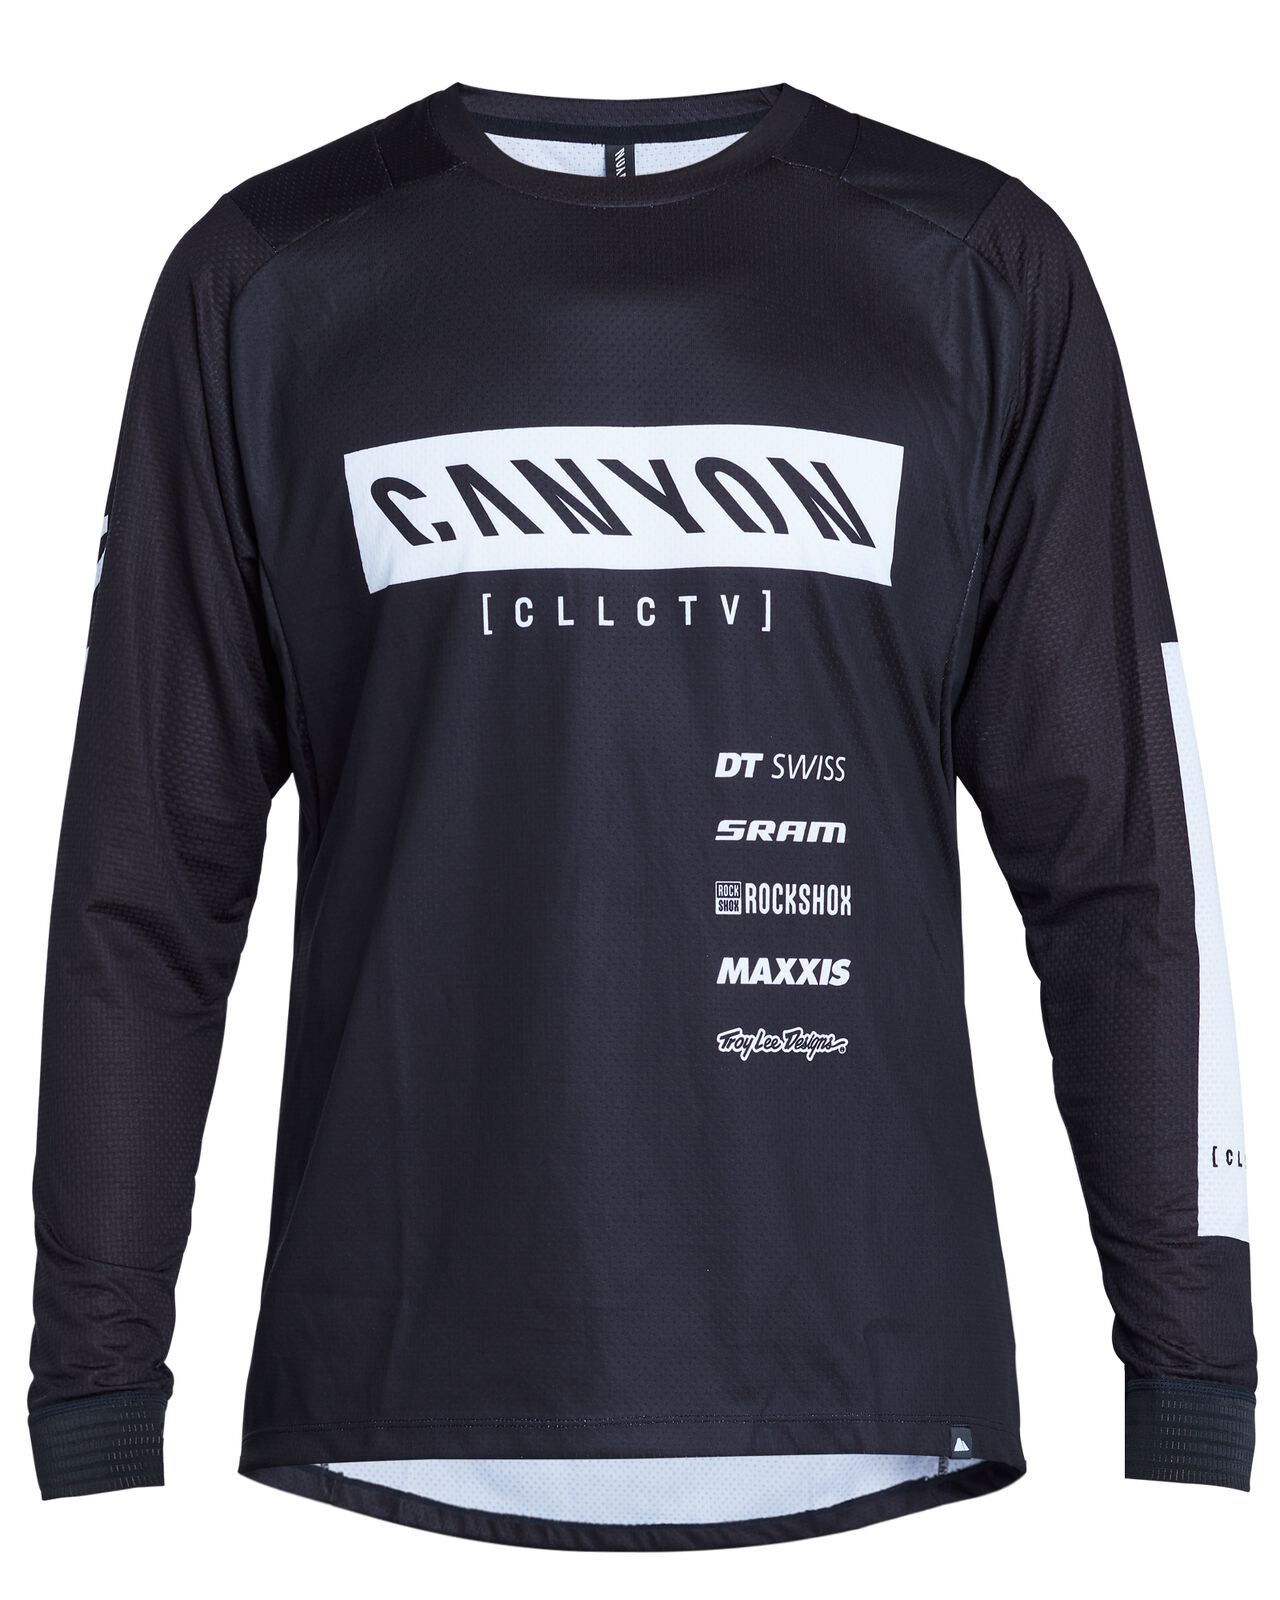 herder Heerlijk Terug kijken Clothing cycling pro teams | CANYON NL